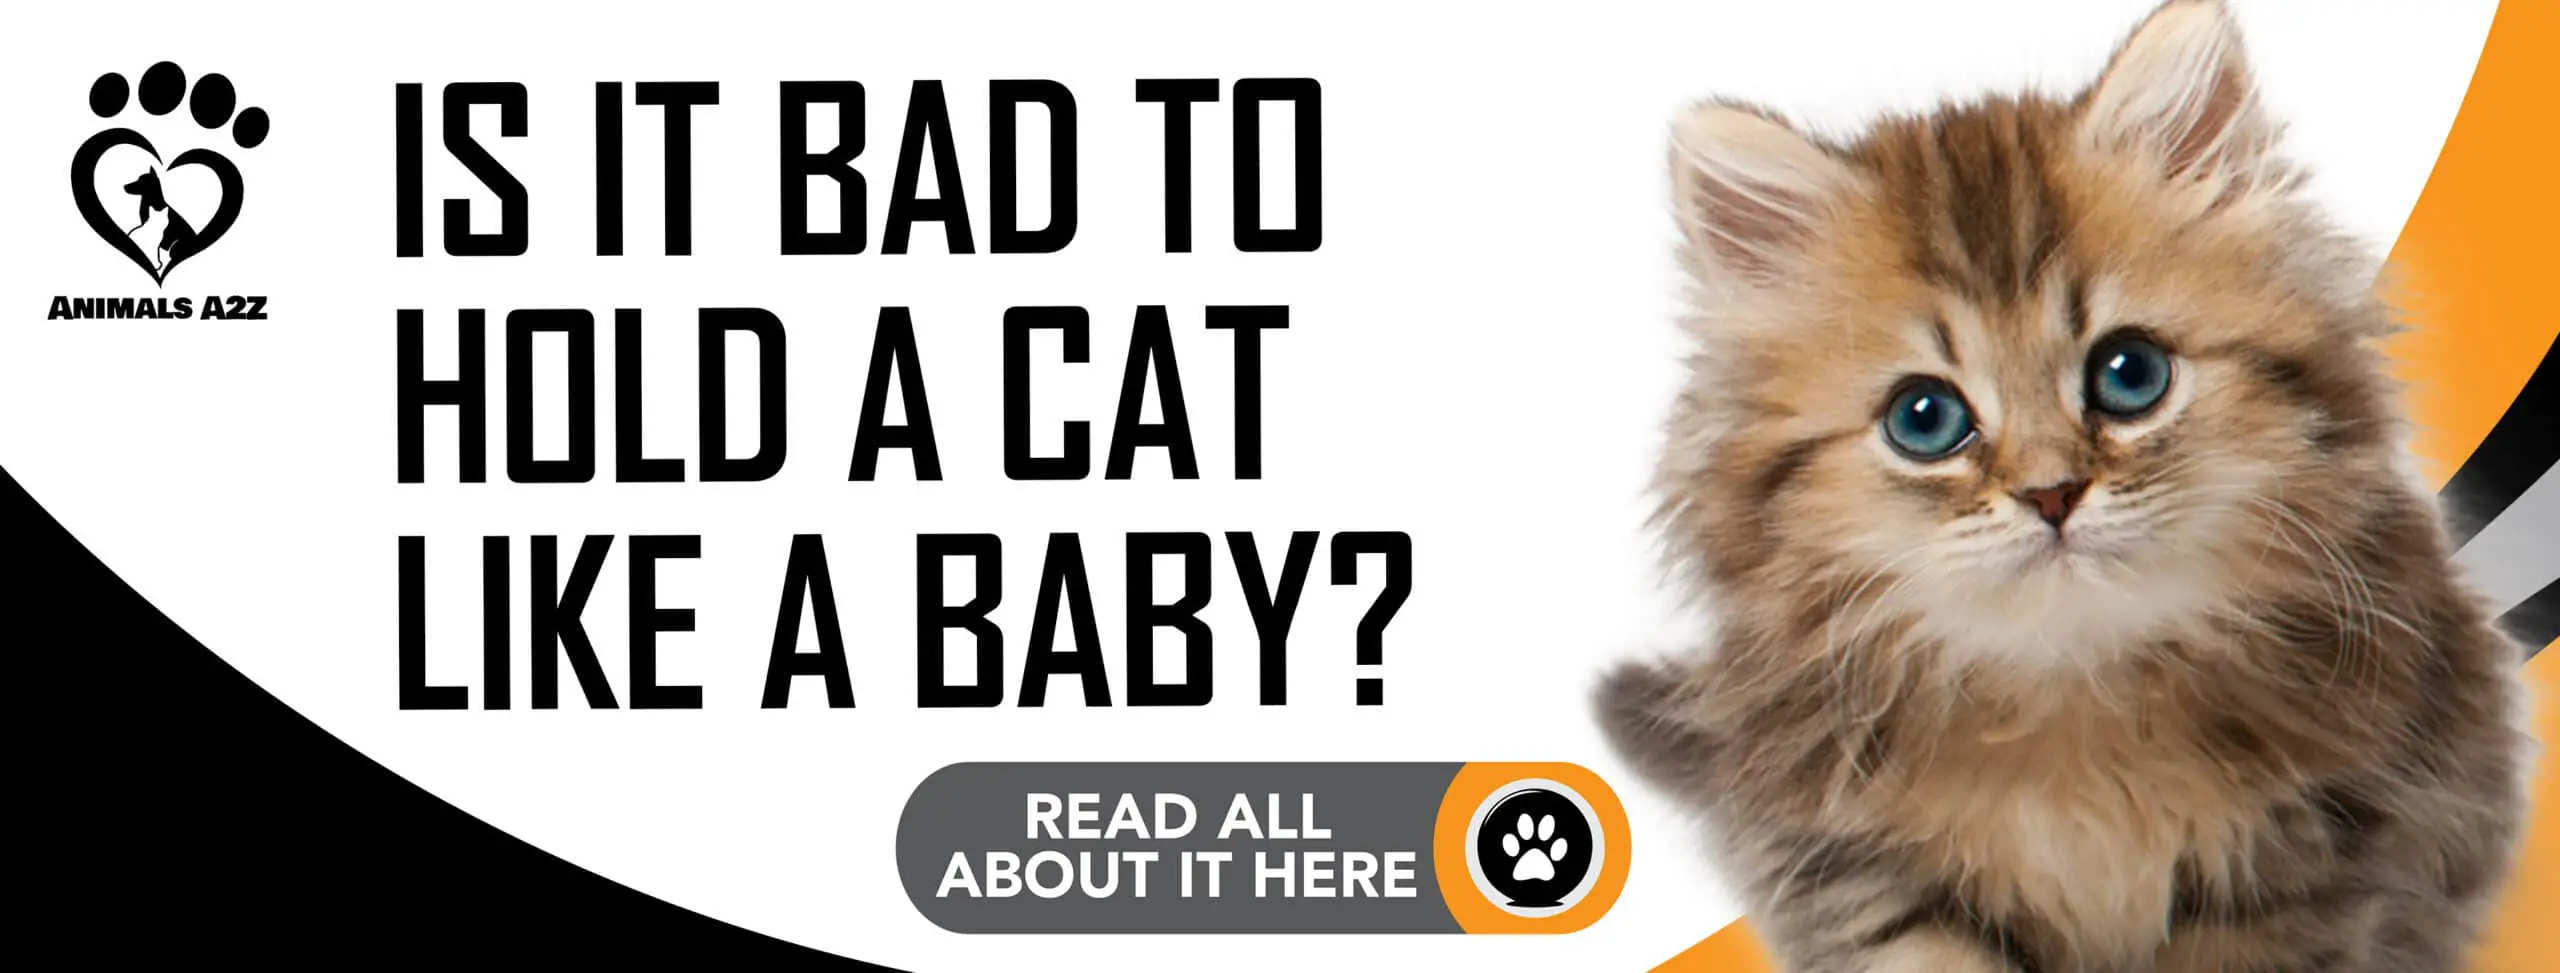 ¿Es malo sostener a un gato como si fuera un bebé?